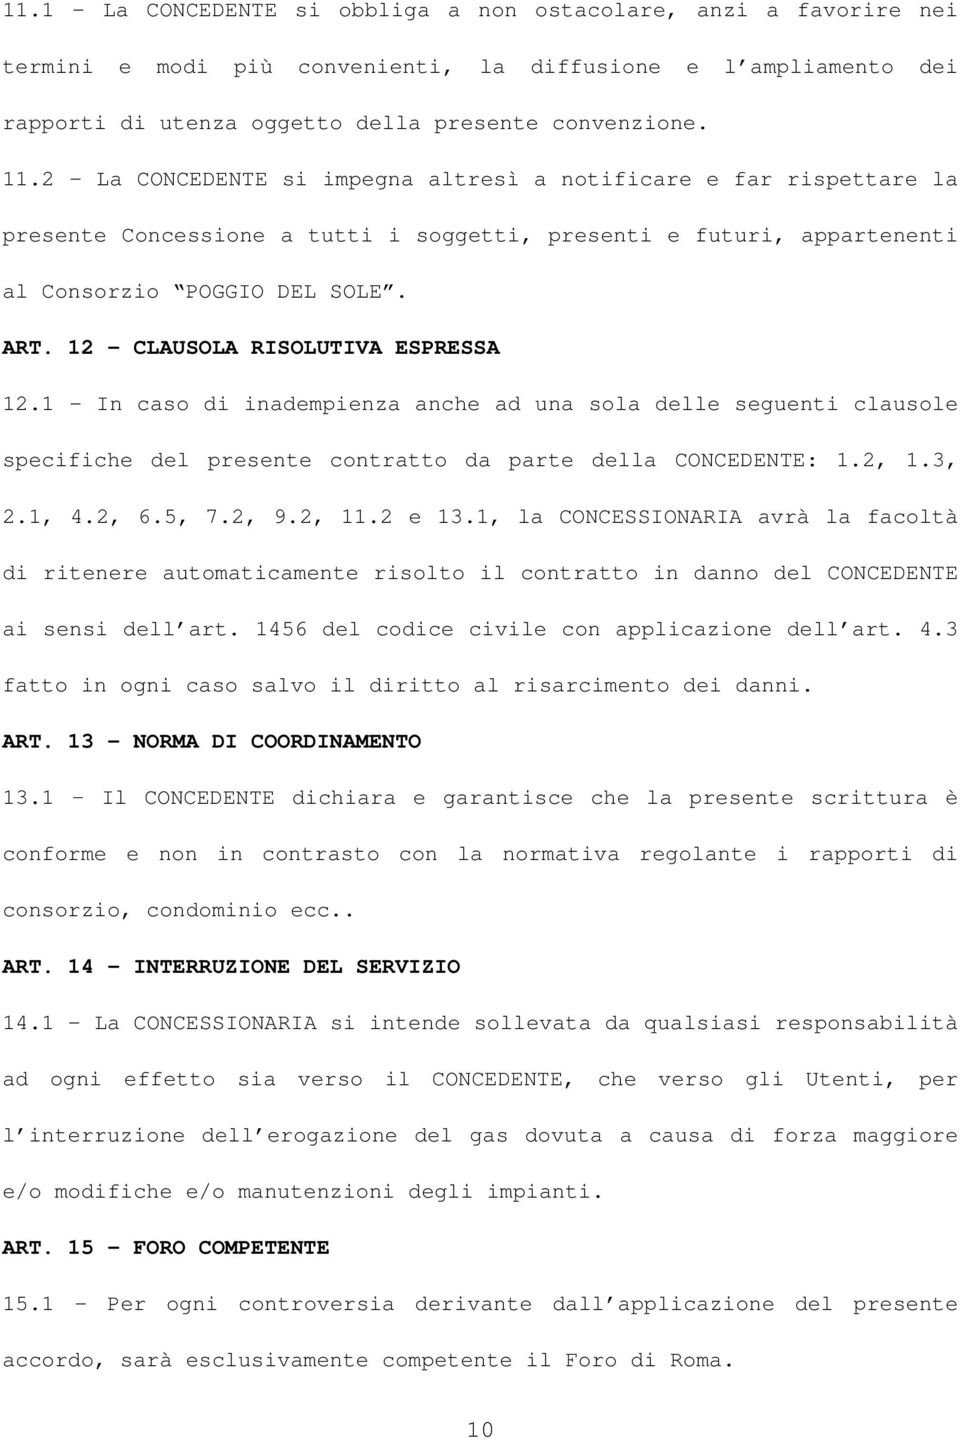 12 CLAUSOLA RISOLUTIVA ESPRESSA 12.1 - In caso di inadempienza anche ad una sola delle seguenti clausole specifiche del presente contratto da parte della CONCEDENTE: 1.2, 1.3, 2.1, 4.2, 6.5, 7.2, 9.